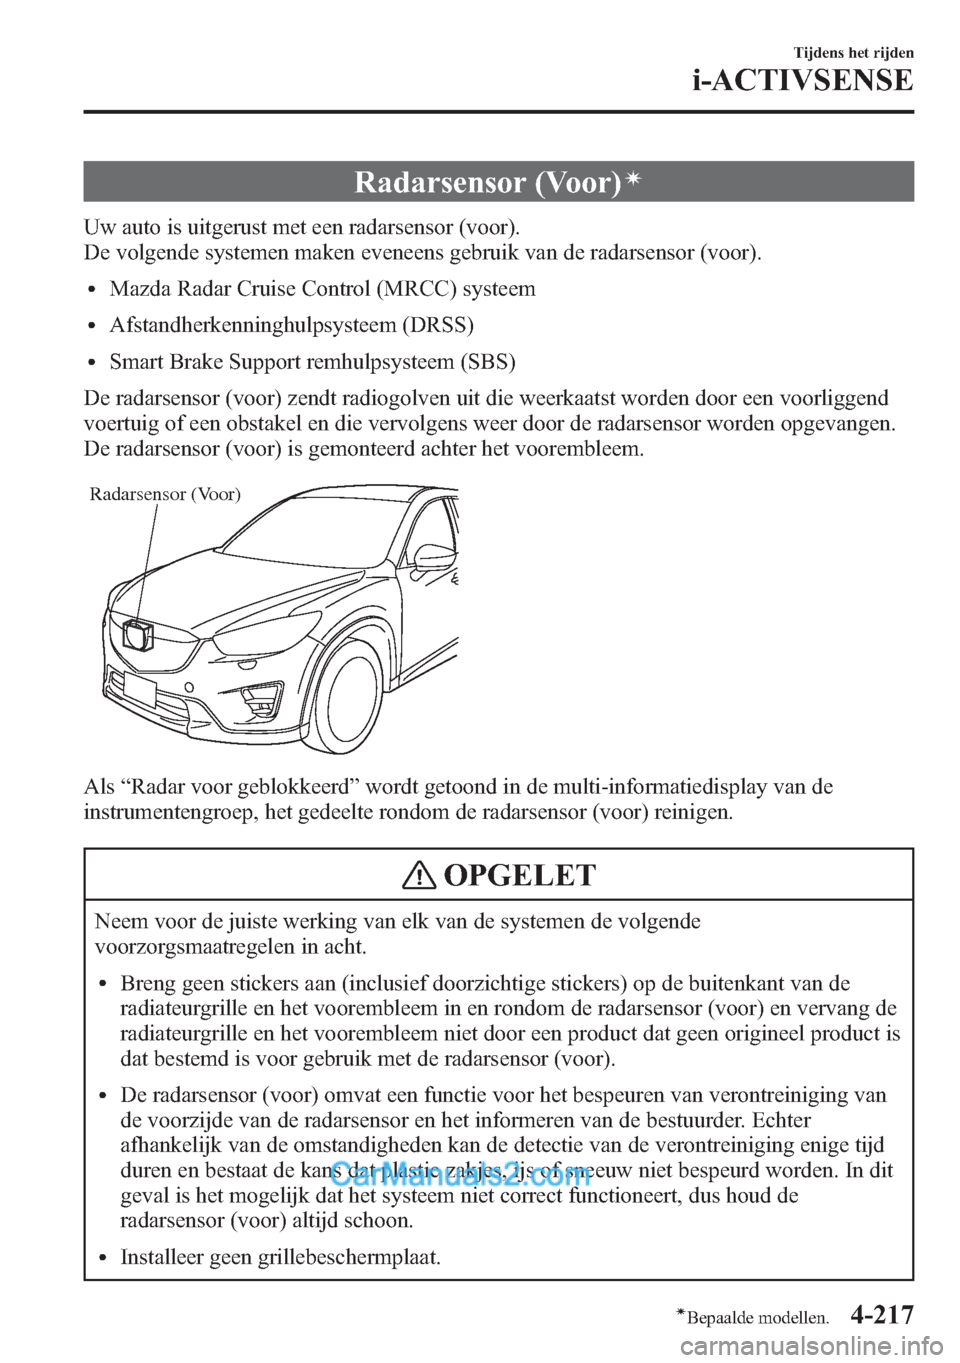 MAZDA MODEL CX-5 2015  Handleiding (in Dutch) Radarsensor (Voor)í
Uw auto is uitgerust met een radarsensor (voor).
De volgende systemen maken eveneens gebruik van de radarsensor (voor).
lMazda Radar Cruise Control (MRCC) systeem
lAfstandherkenni